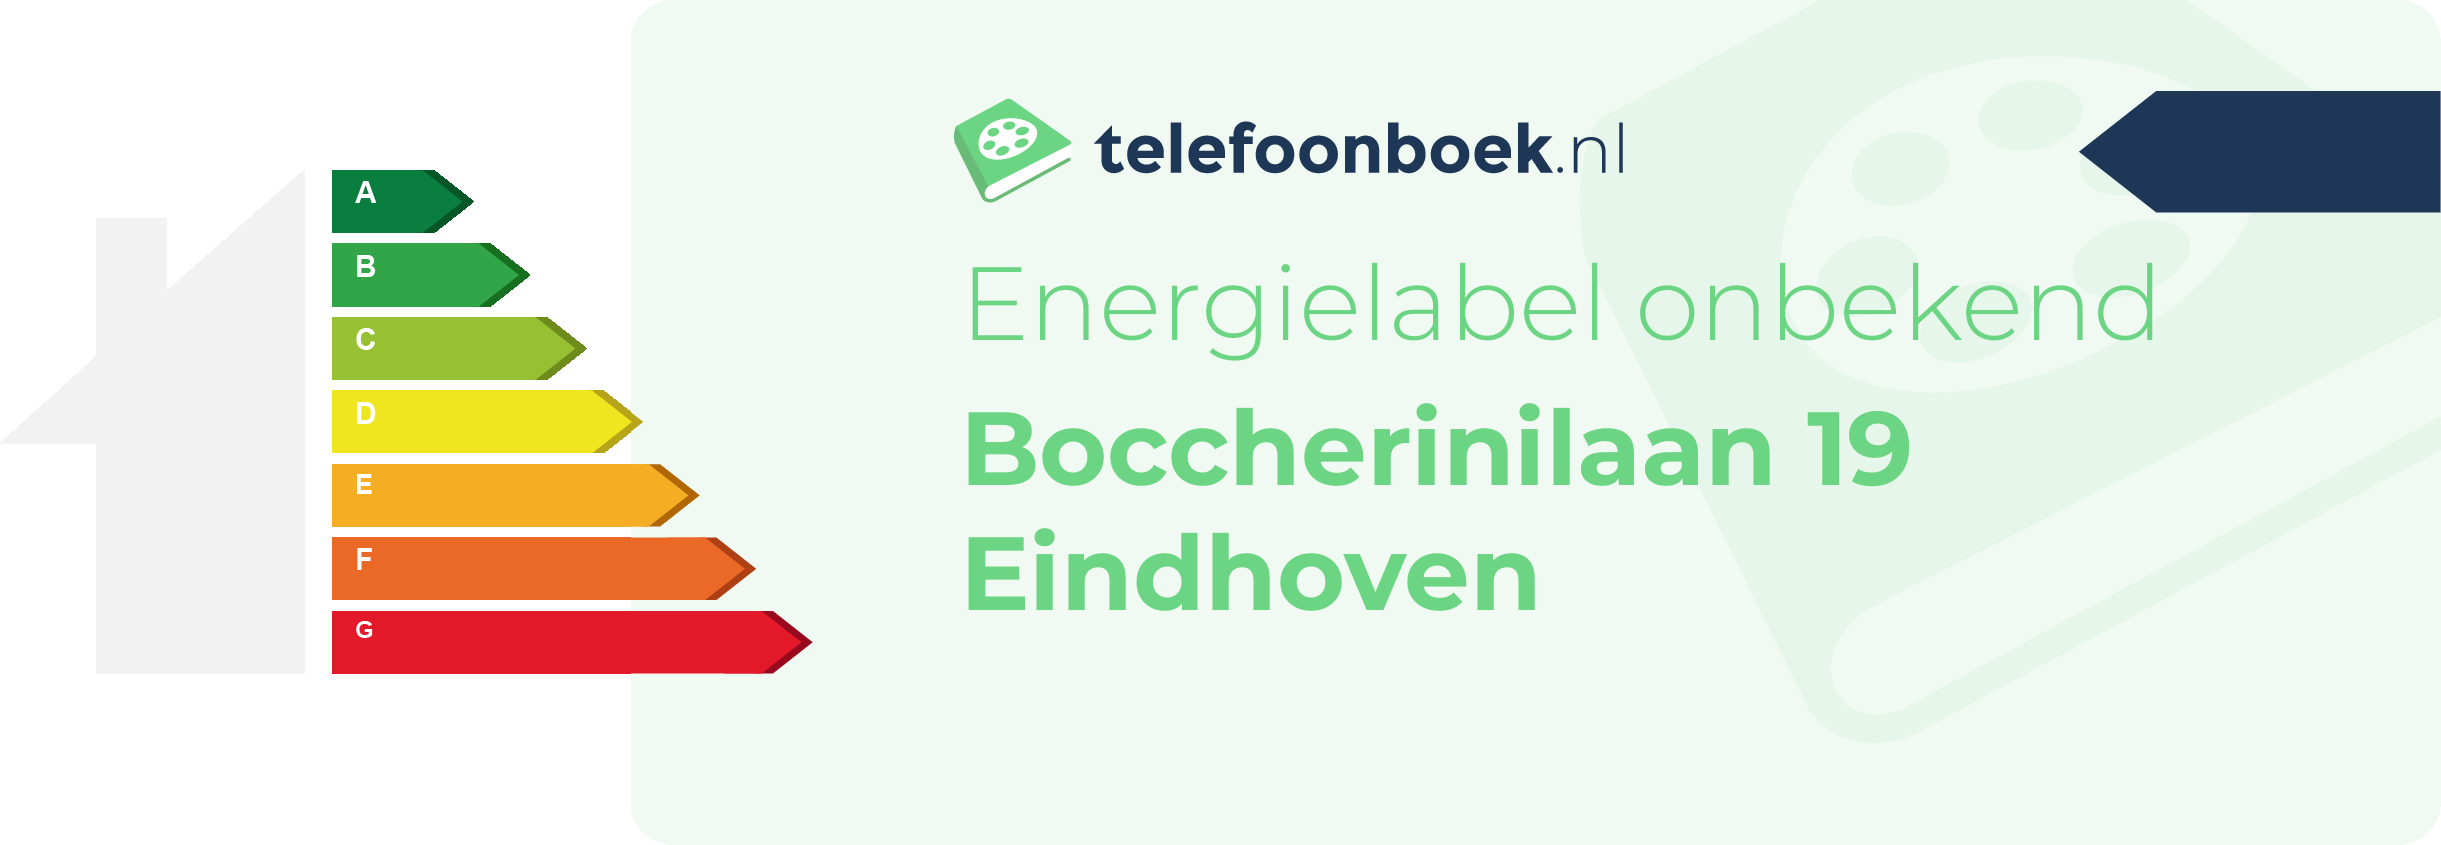 Energielabel Boccherinilaan 19 Eindhoven